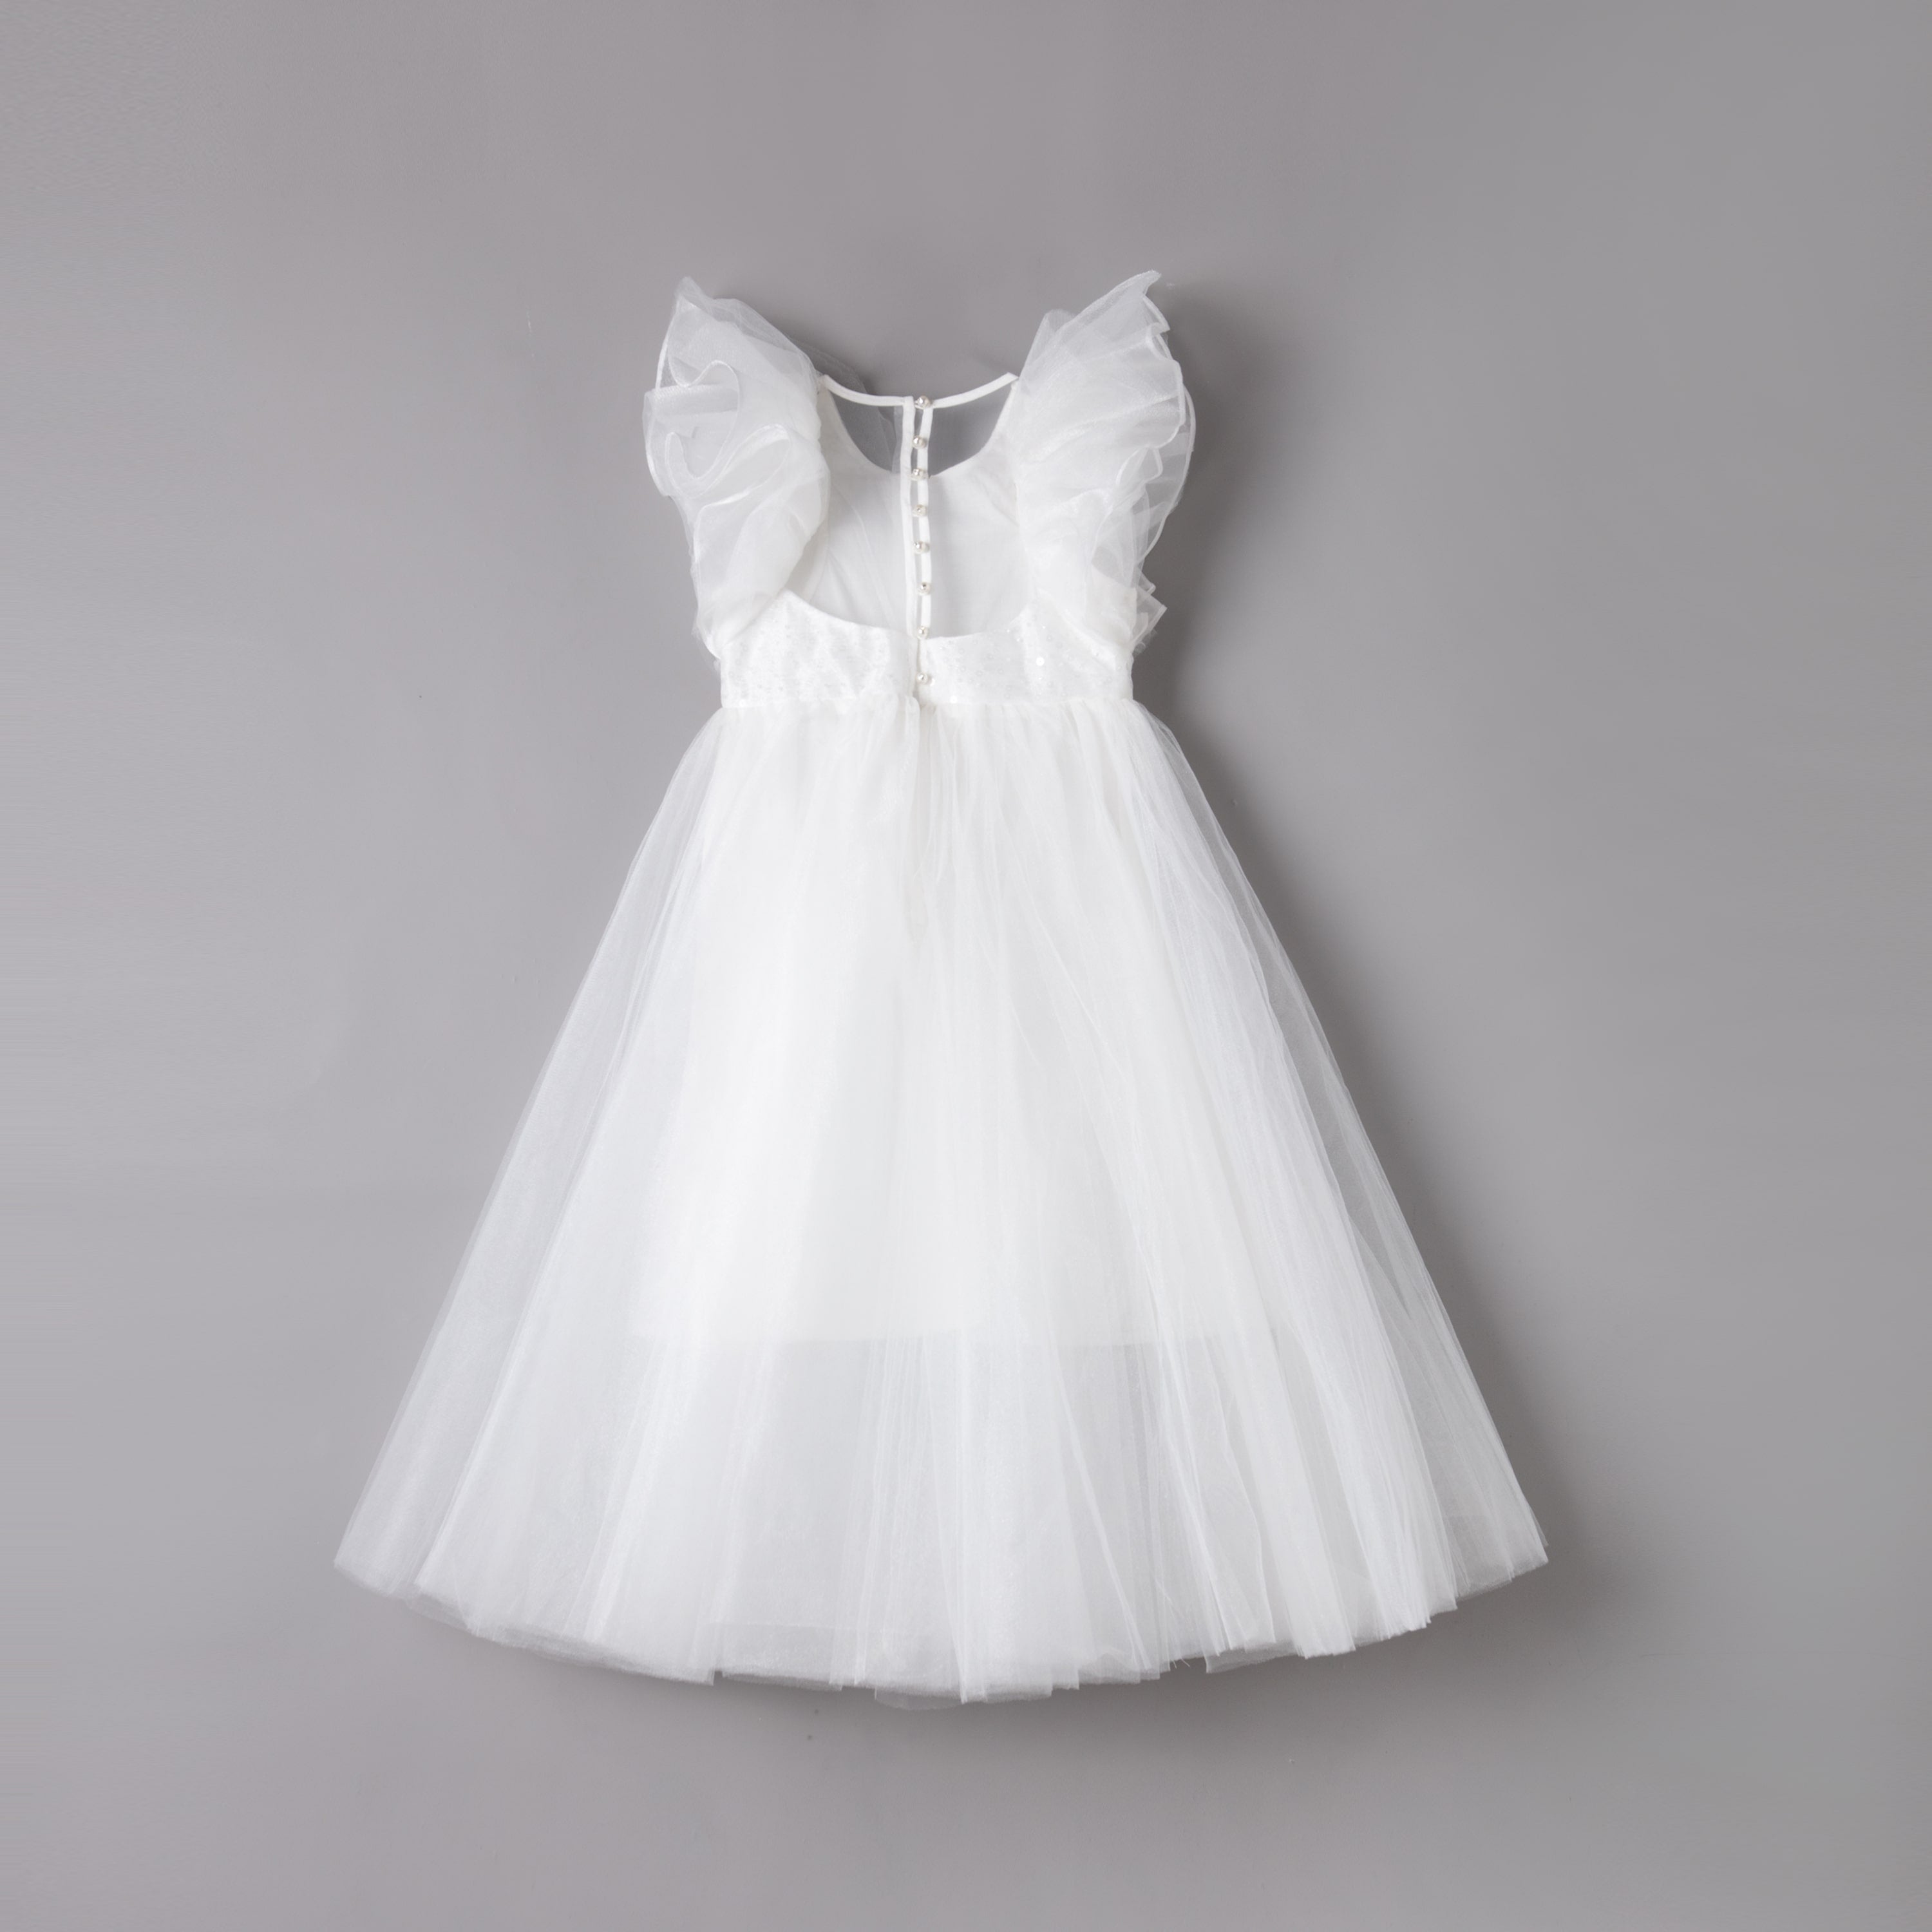 女童白色蝴蝶袖长礼服裙